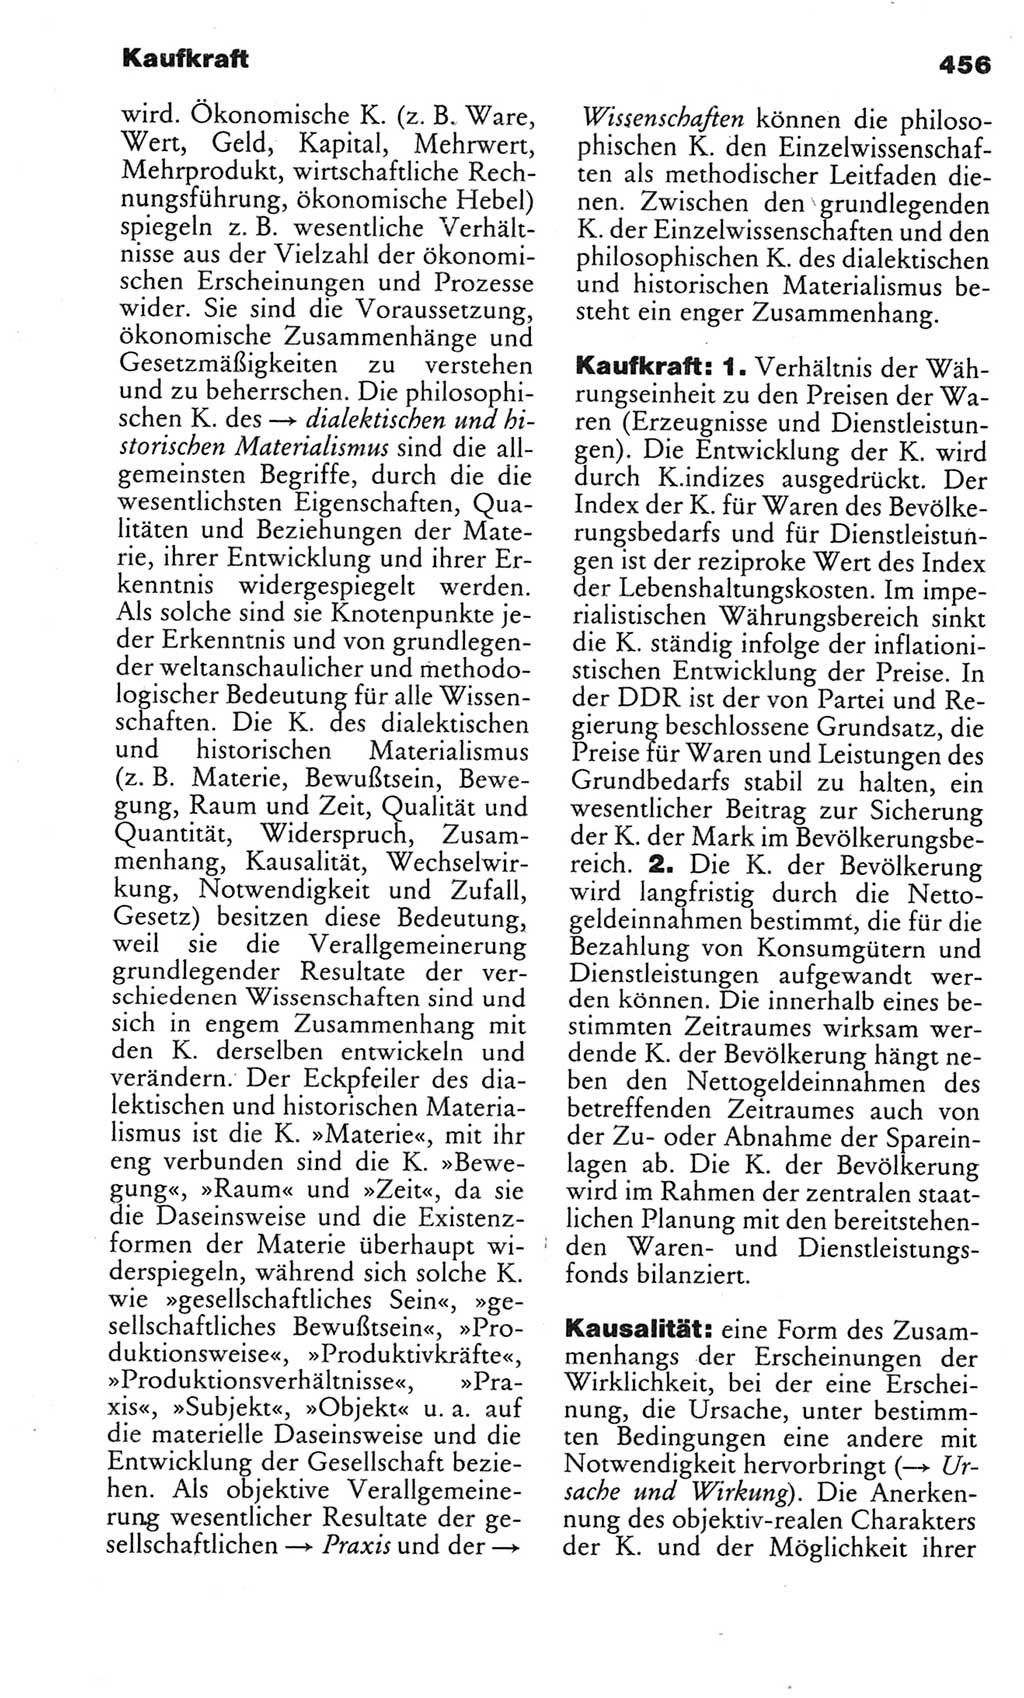 Kleines politisches Wörterbuch [Deutsche Demokratische Republik (DDR)] 1983, Seite 456 (Kl. pol. Wb. DDR 1983, S. 456)